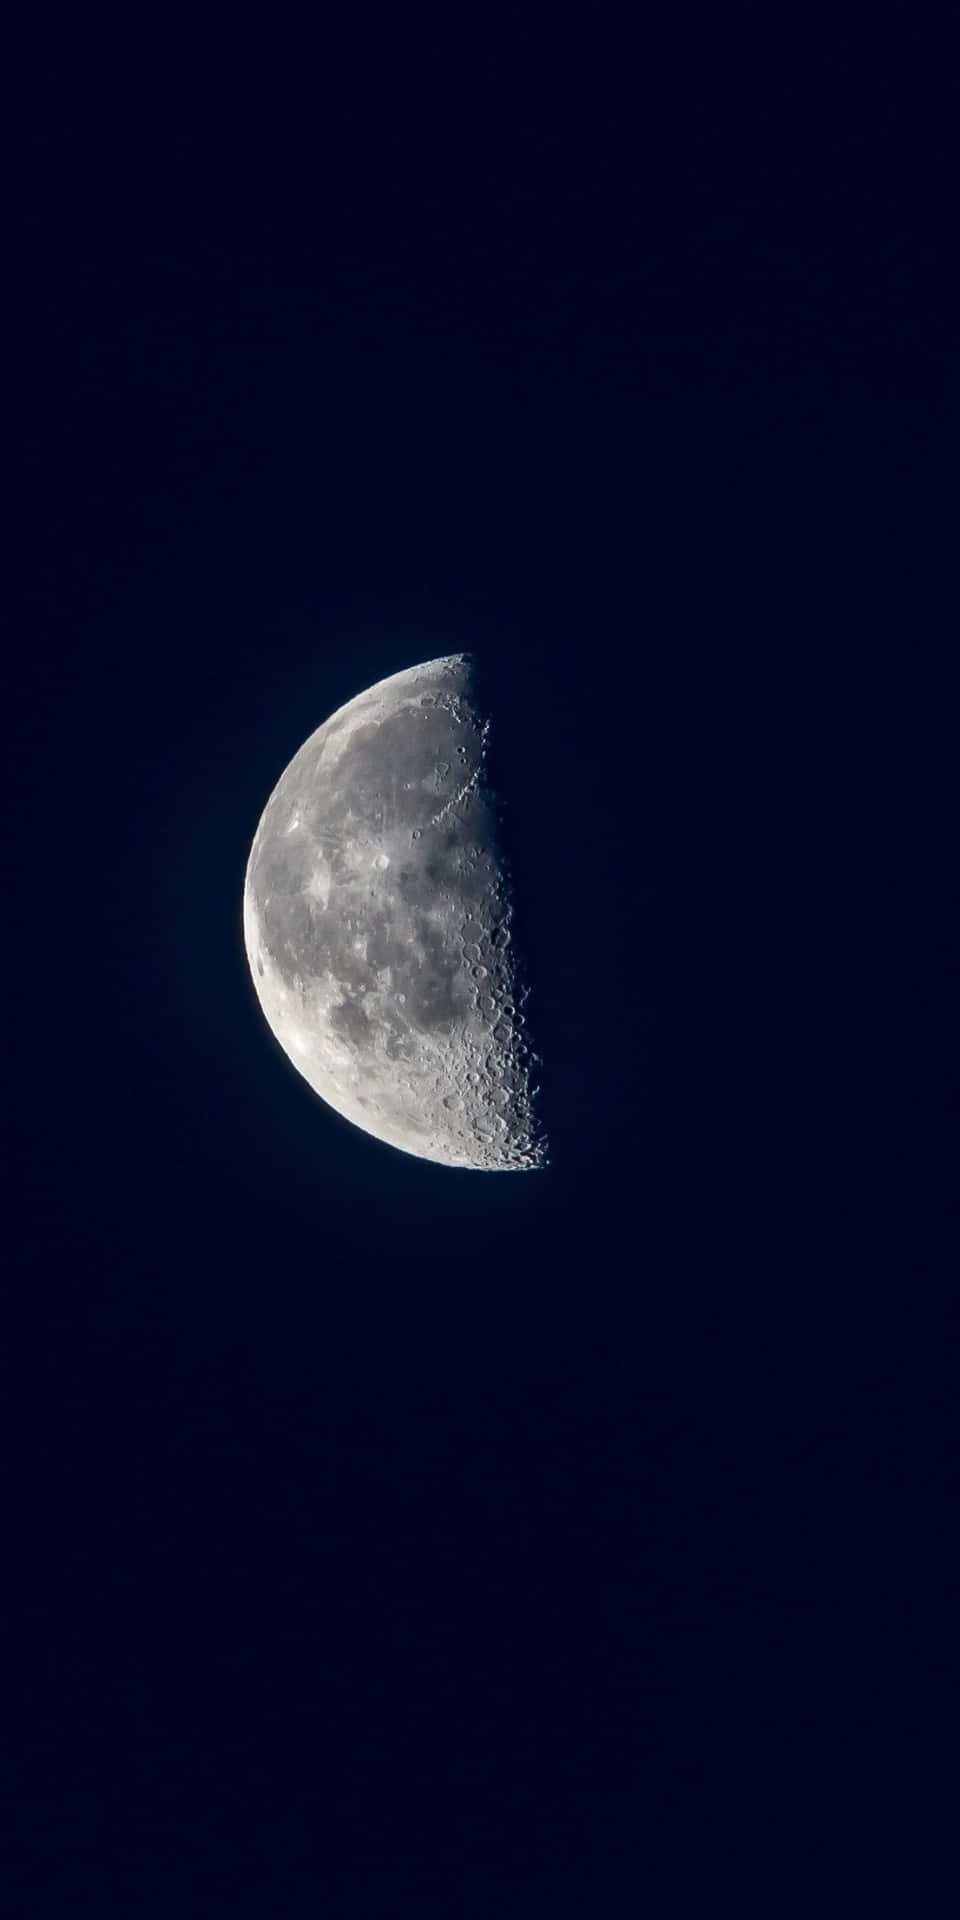 Unavista Impresionante De La Media Luna Brillando En El Cielo Nocturno.